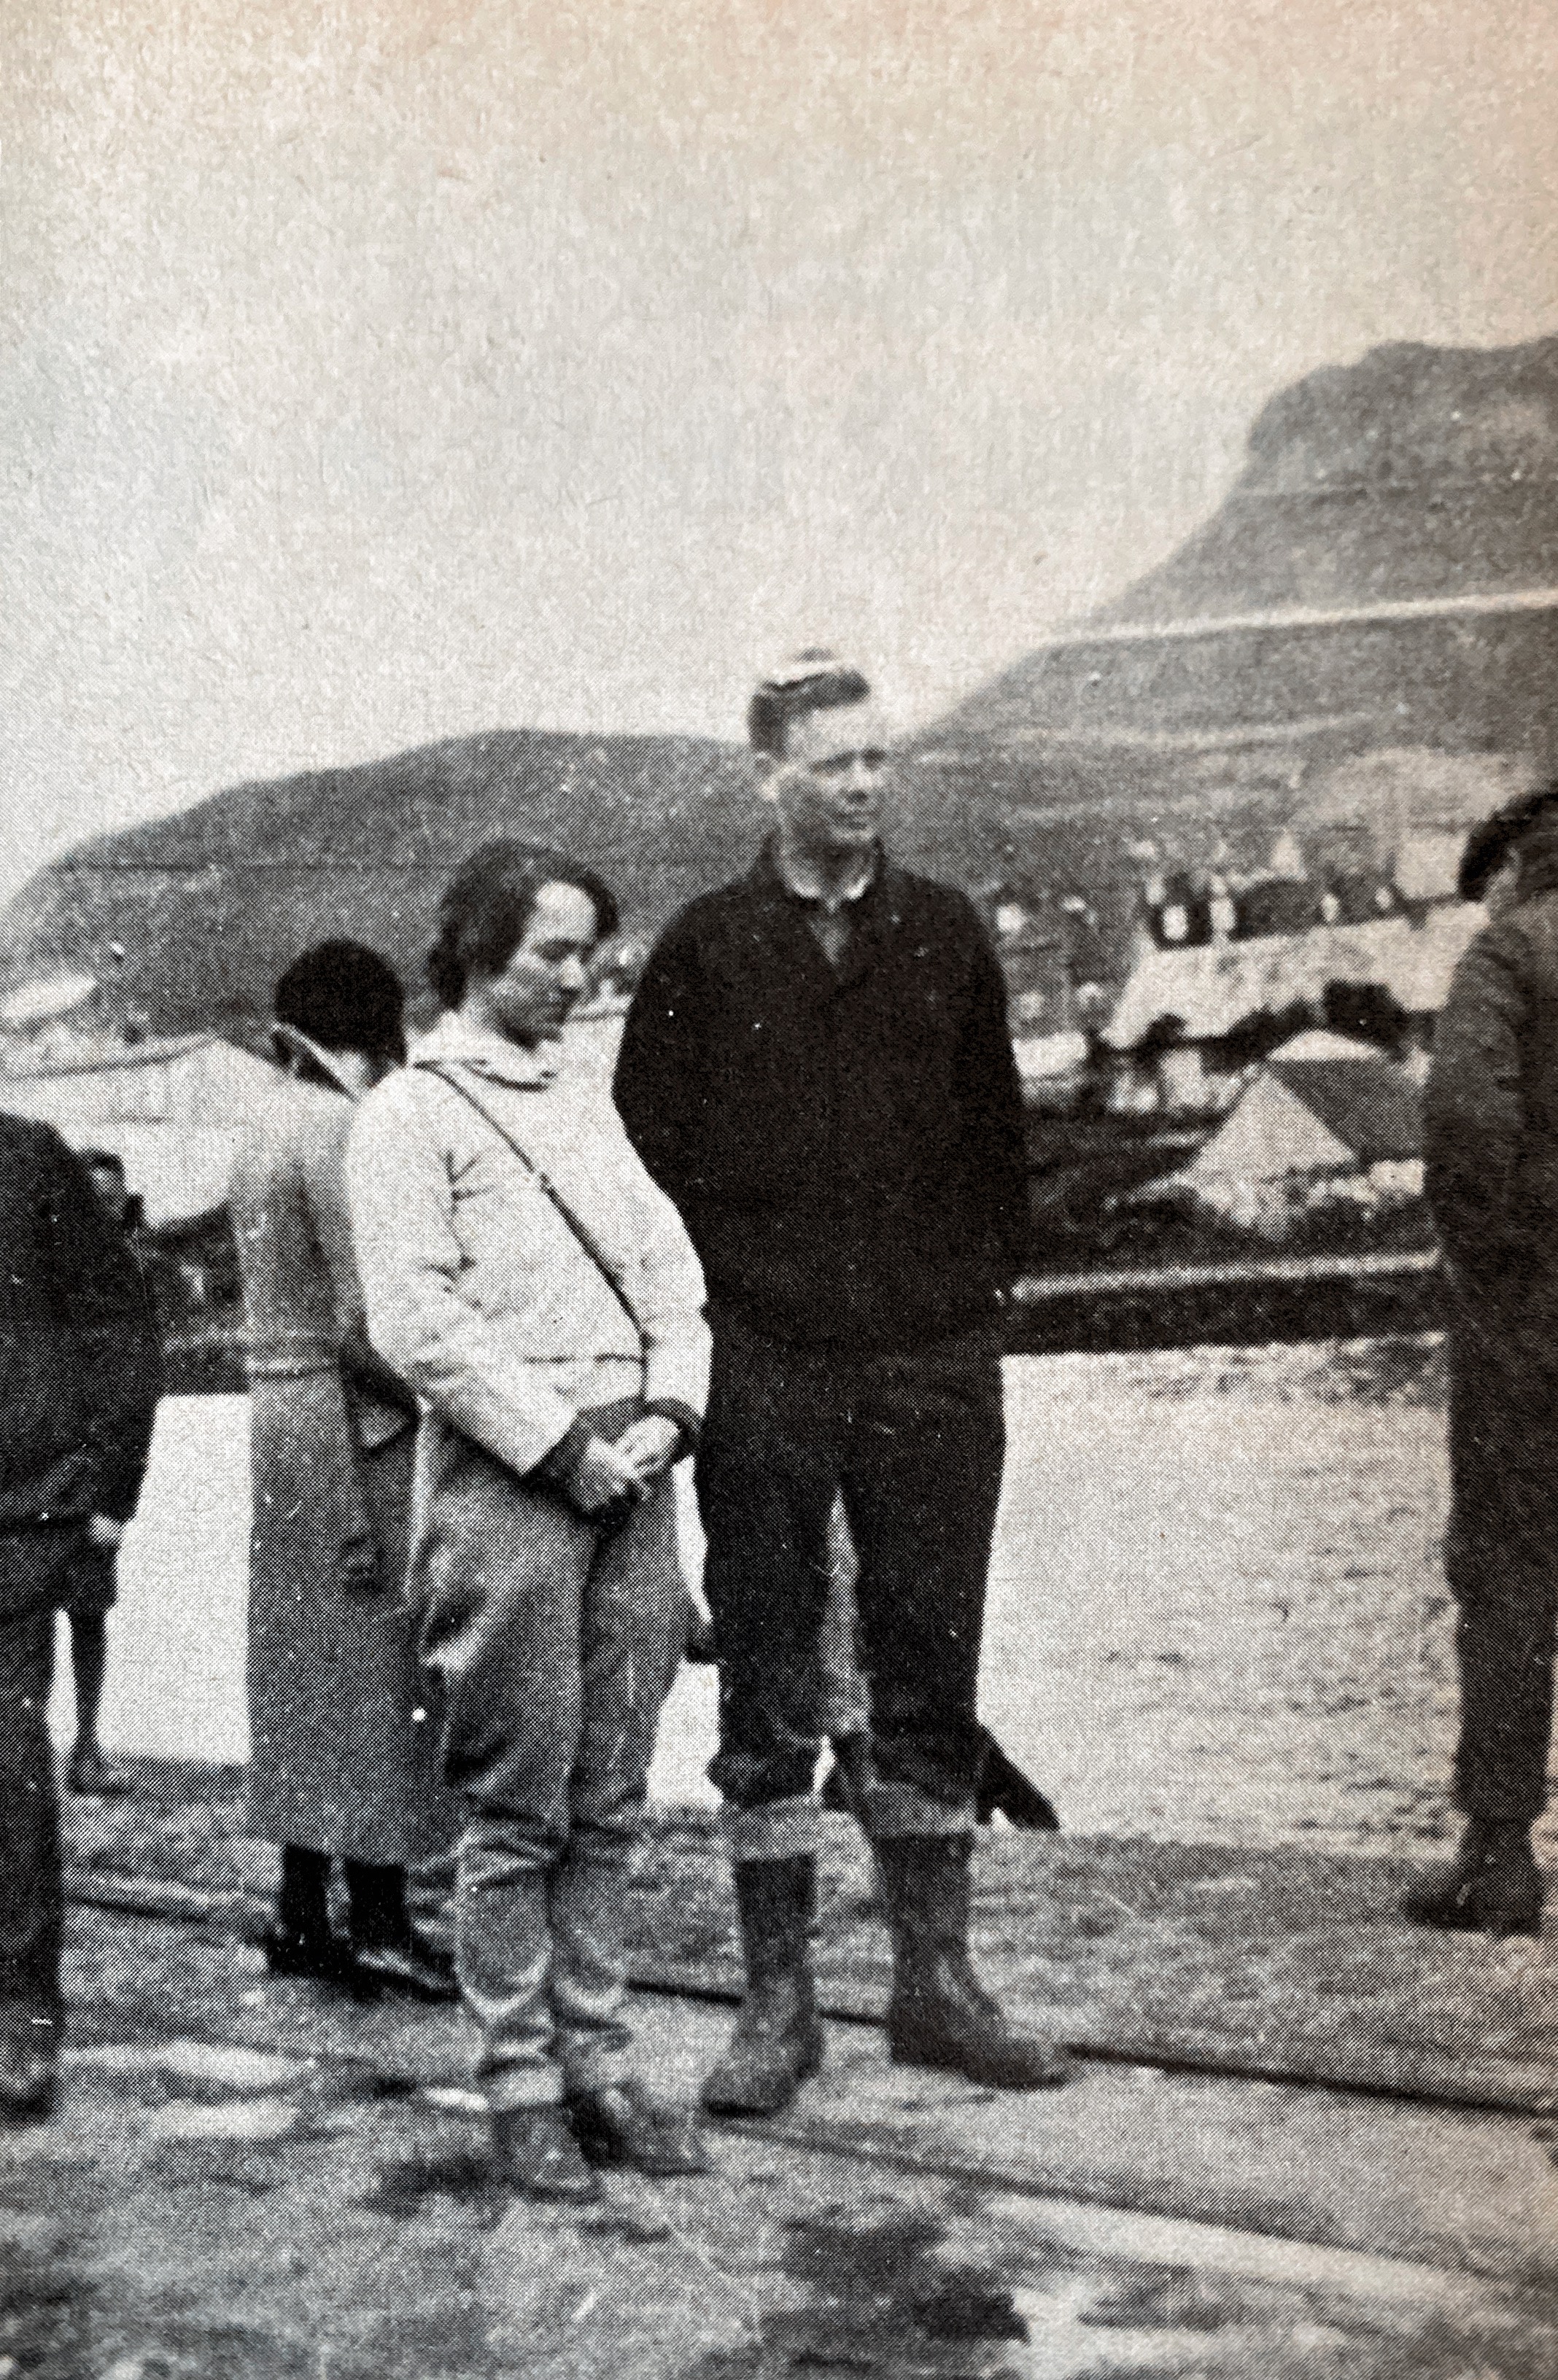 Charles Lindberg and wife in Faroe Islands (Tvøroyri) 1933